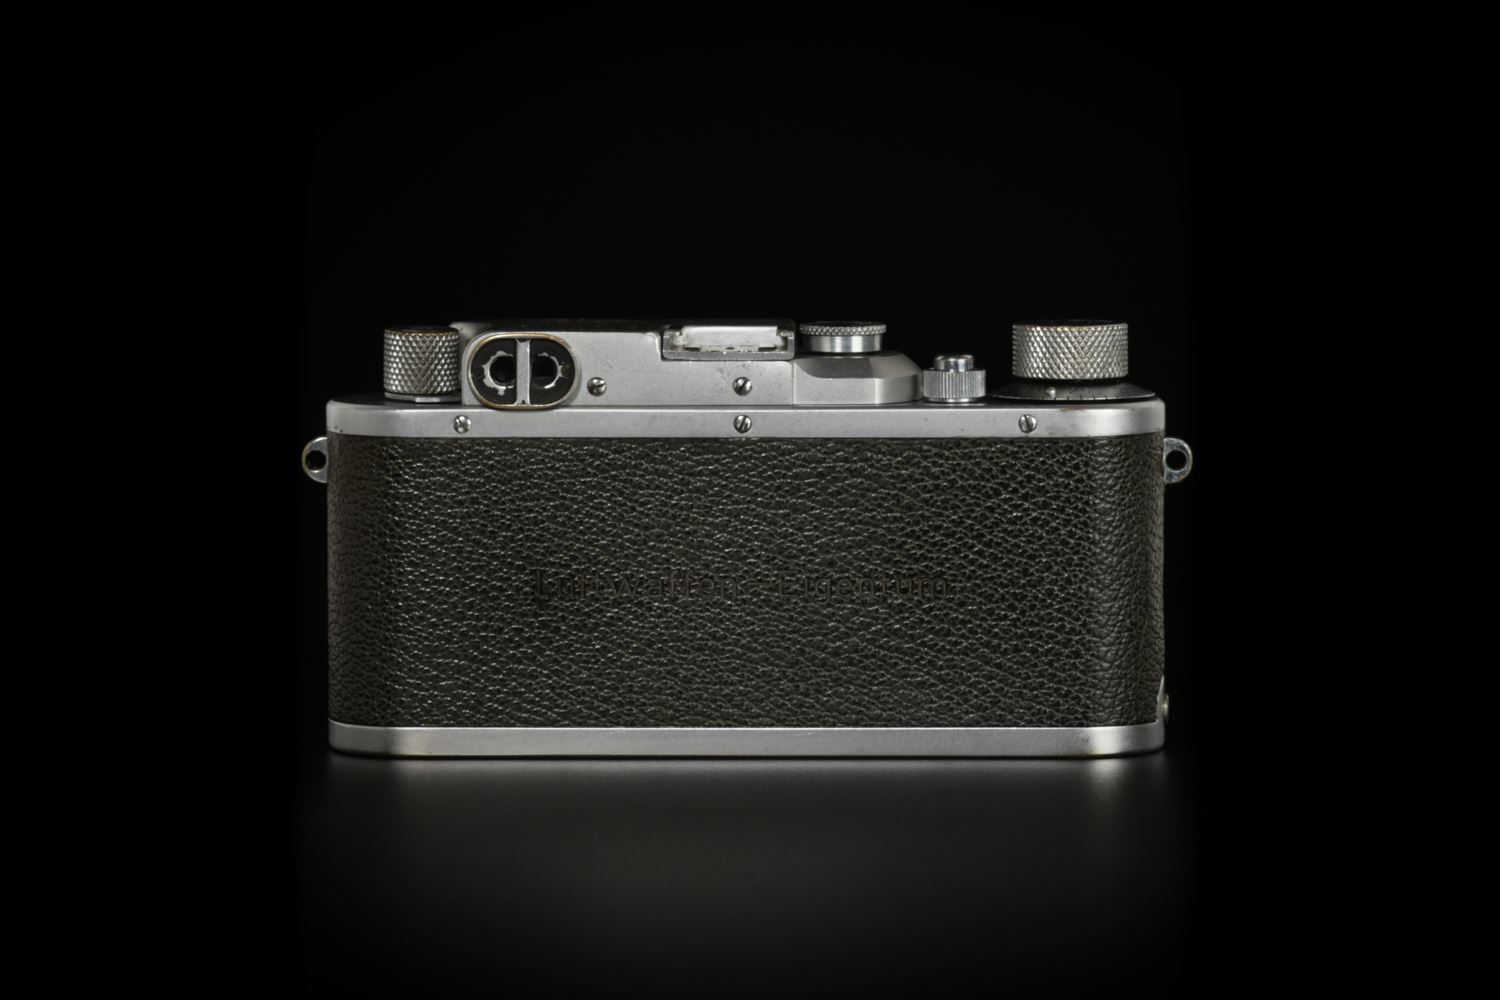 Picture of Leica iiib Luftwaffen-Eigentum with Elmar 50mm f/3.5